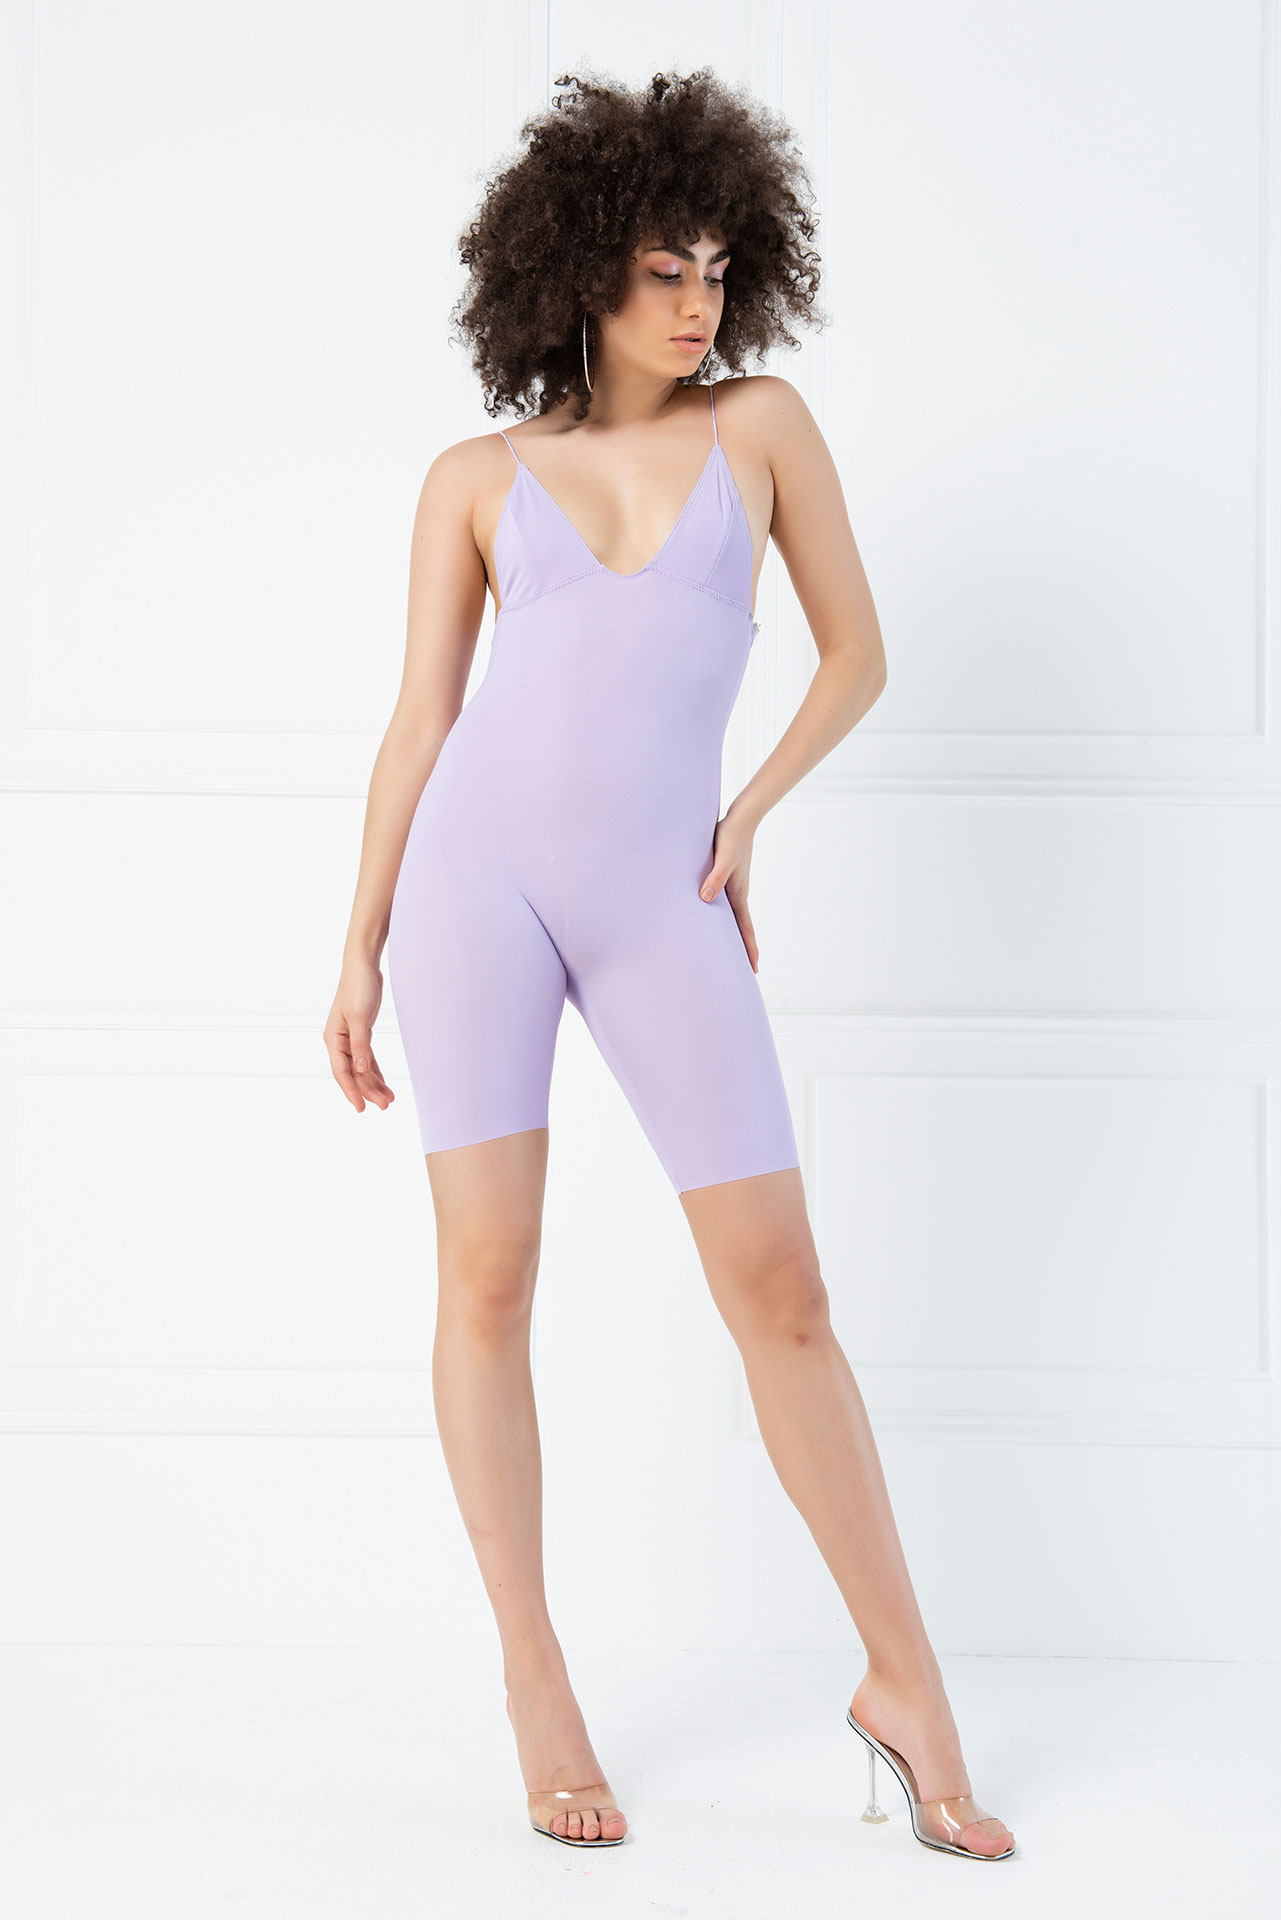 Deep V Back Spaghetti Strap Mid-Thigh Shapewear Lilac Bodysuit